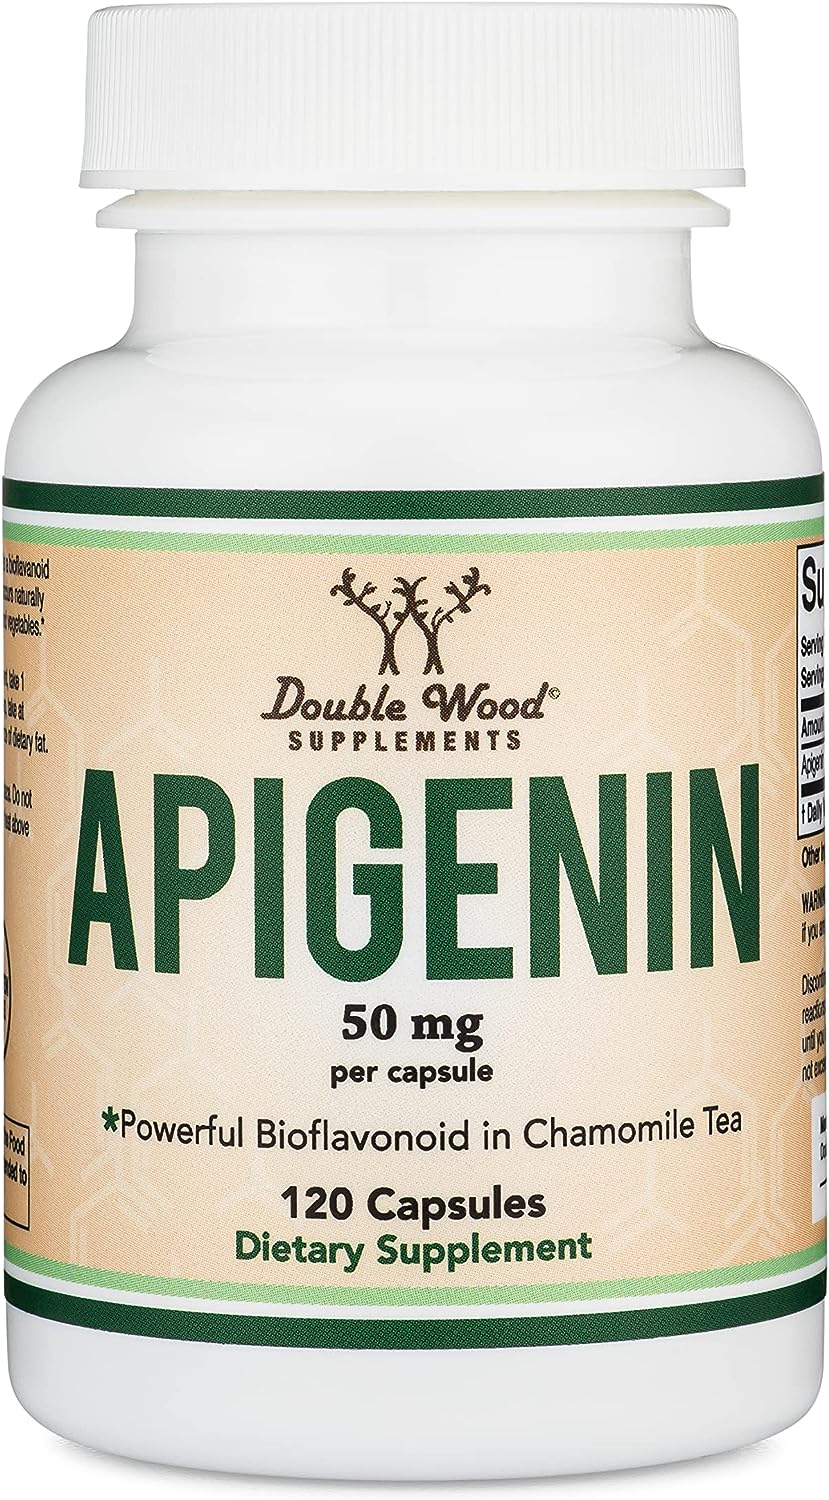 Apigenin Supplement Review